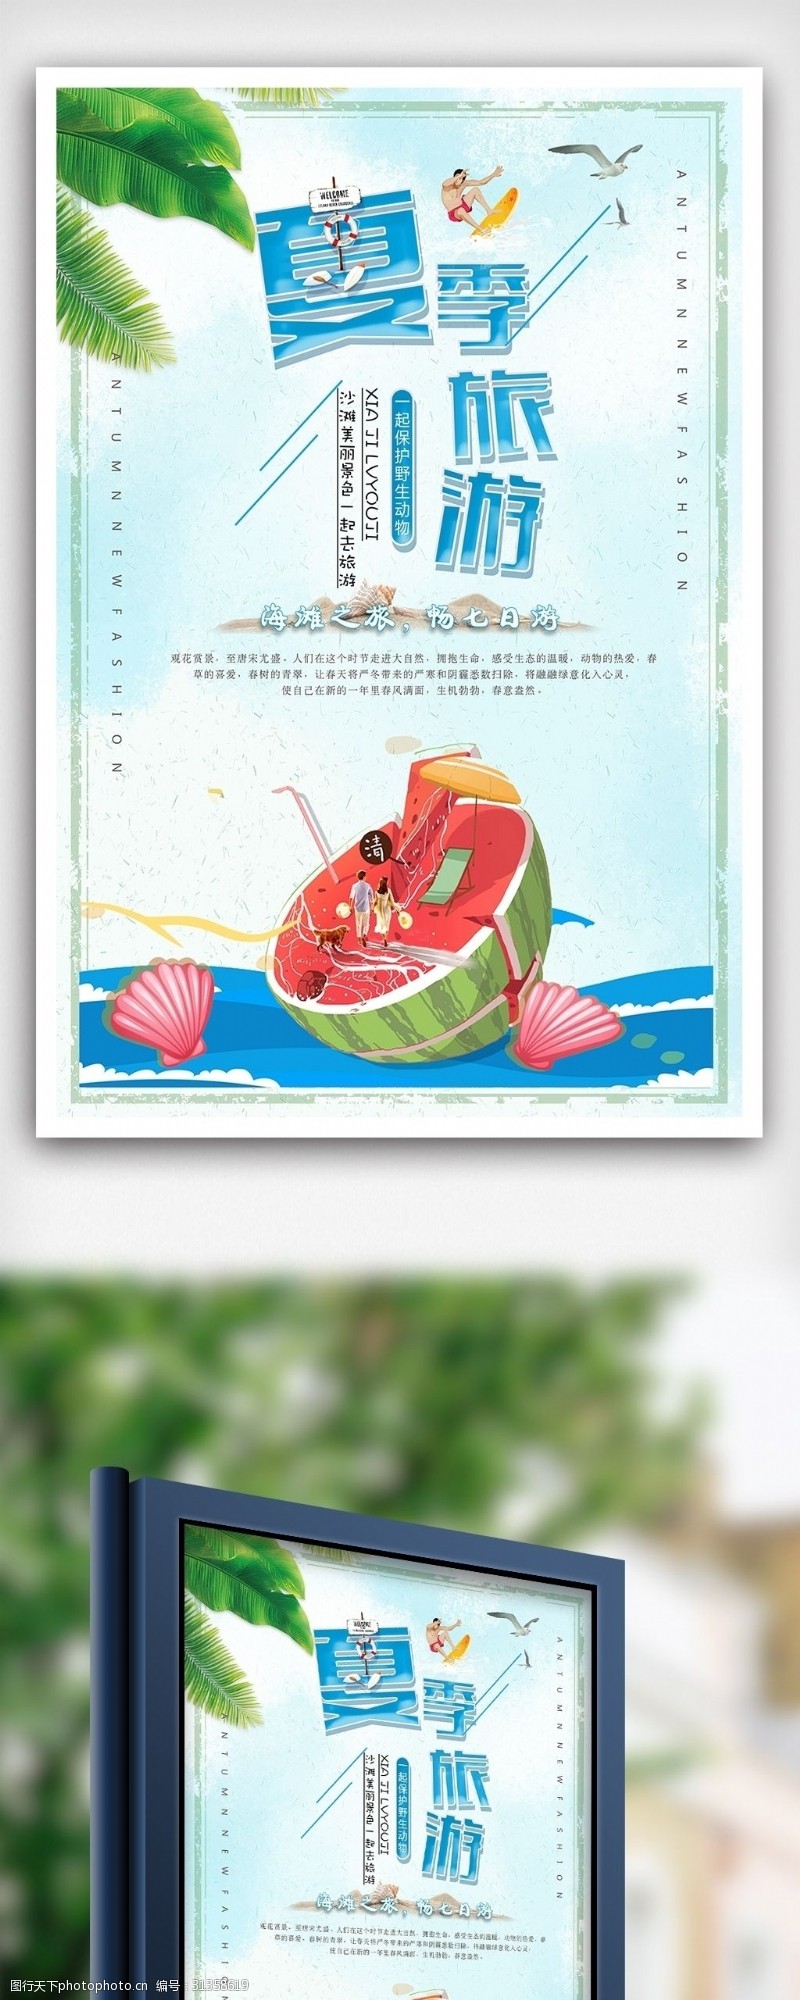 夏日狂欢季旅游促销海报